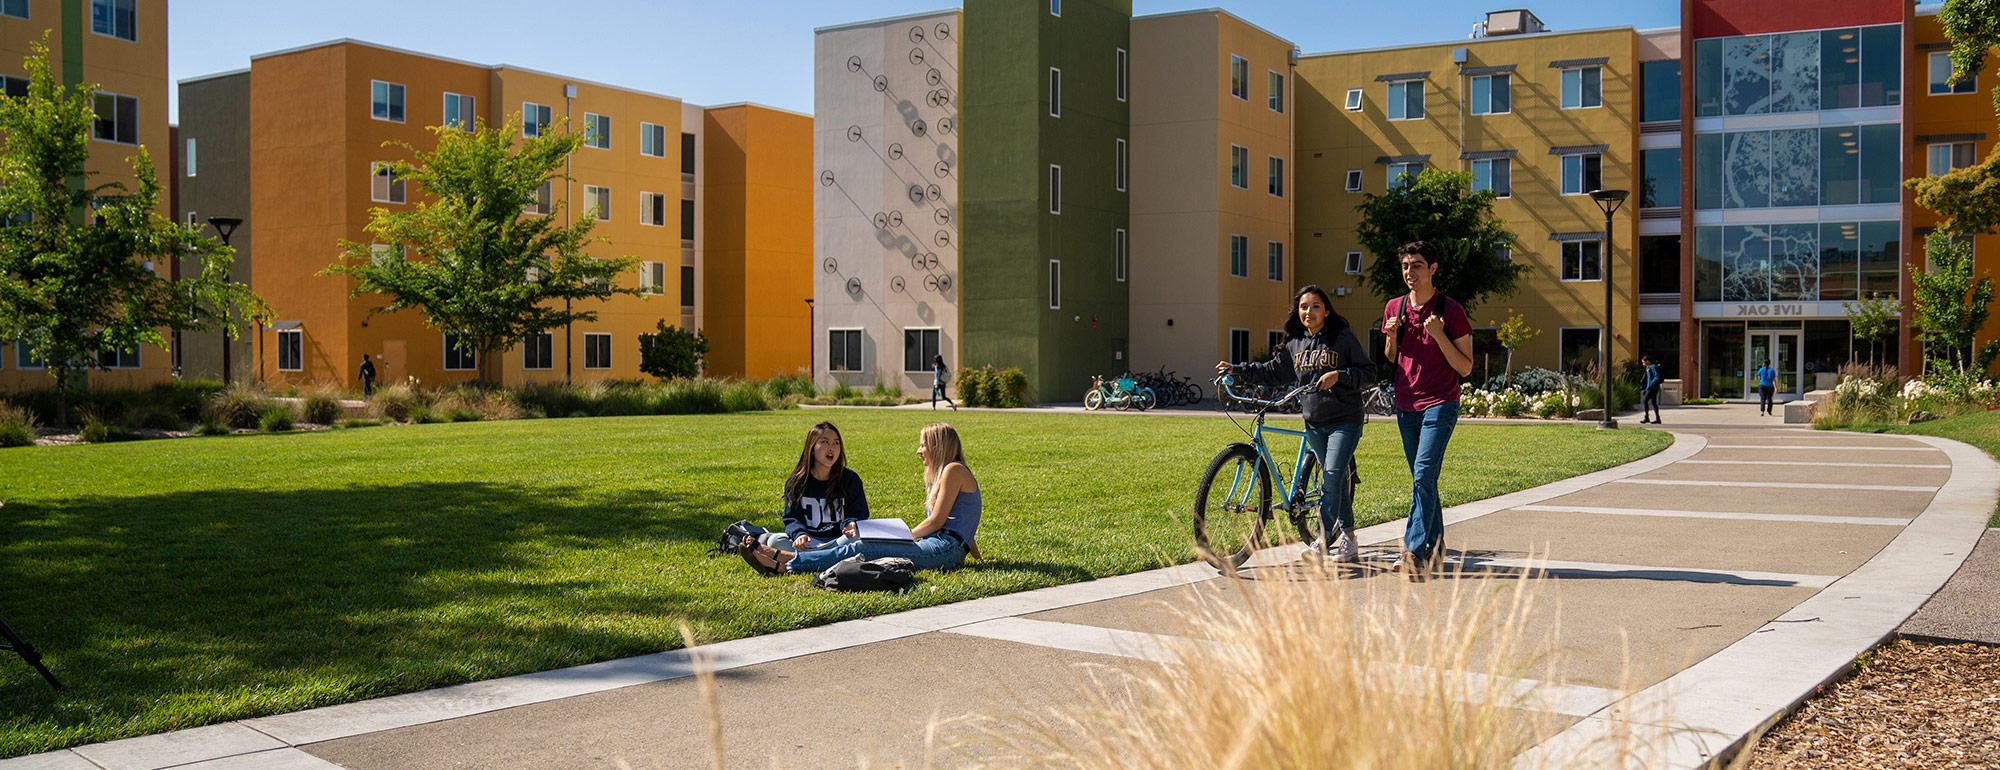 两个学生在骑自行车，另外两个学生坐在宿舍楼前的草地上